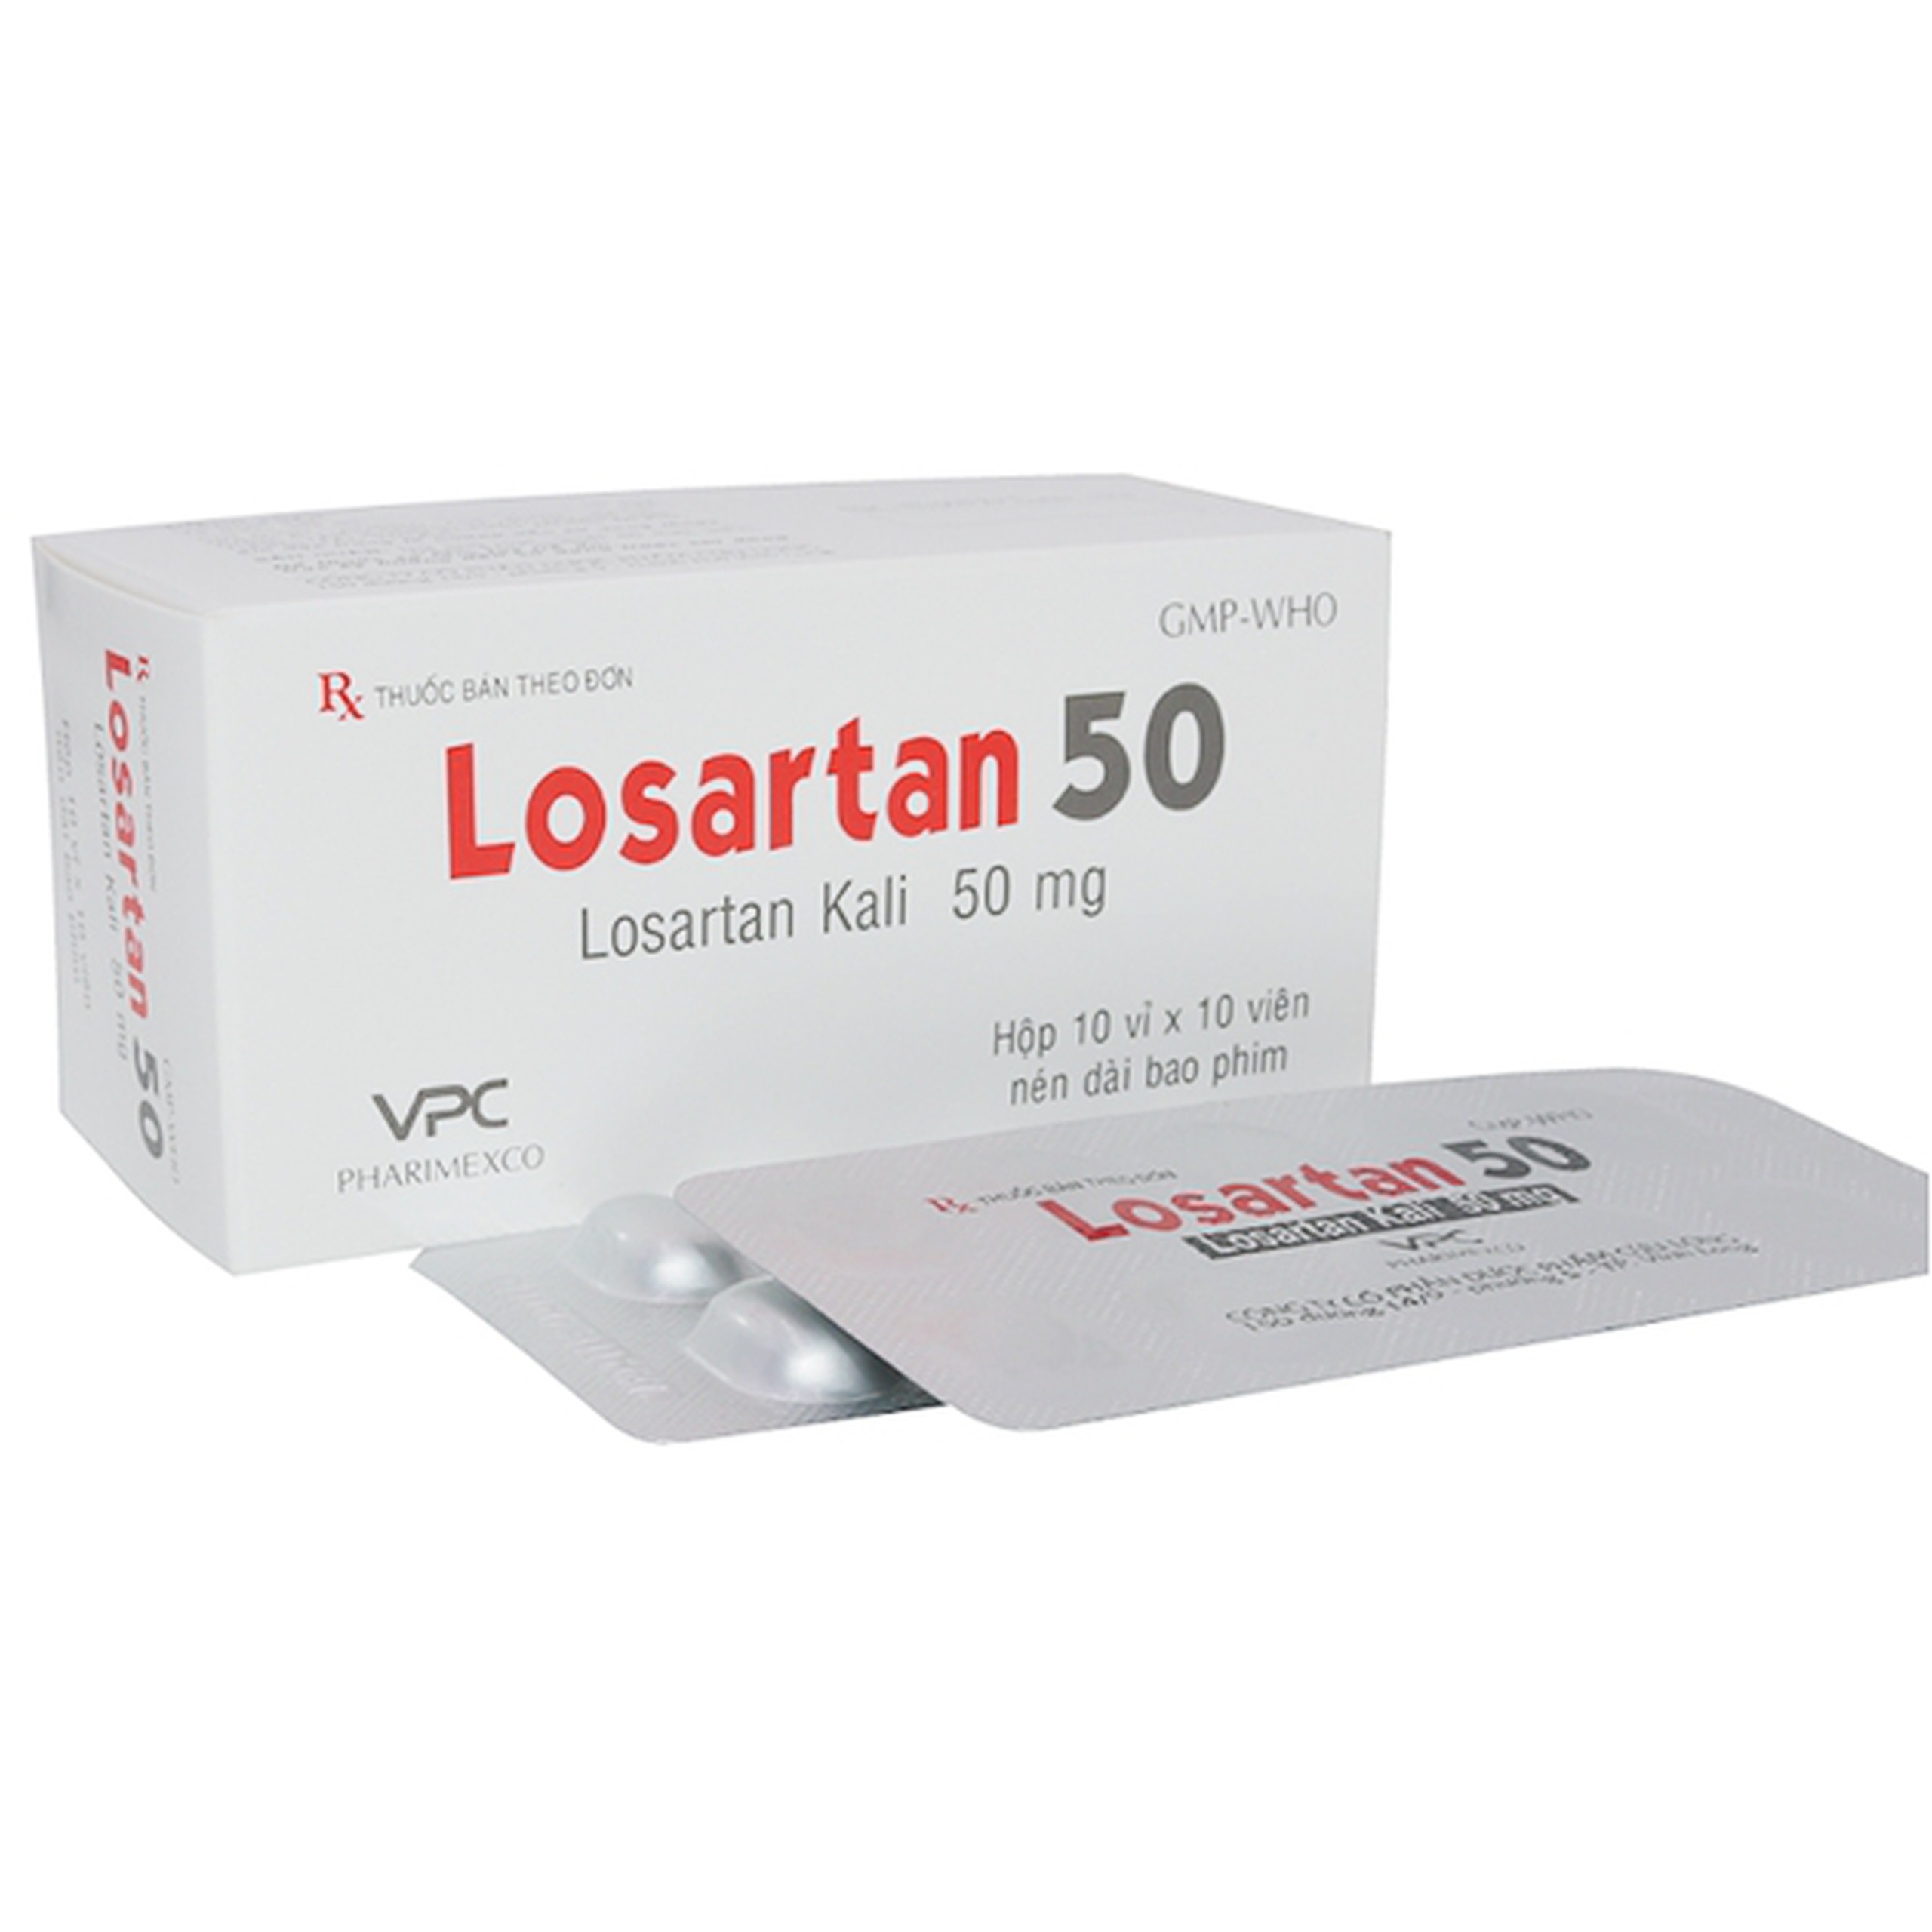 Viên nén Losartan 50 Pharimexco điều trị tăng huyết áp (10 vỉ x 10 viên)